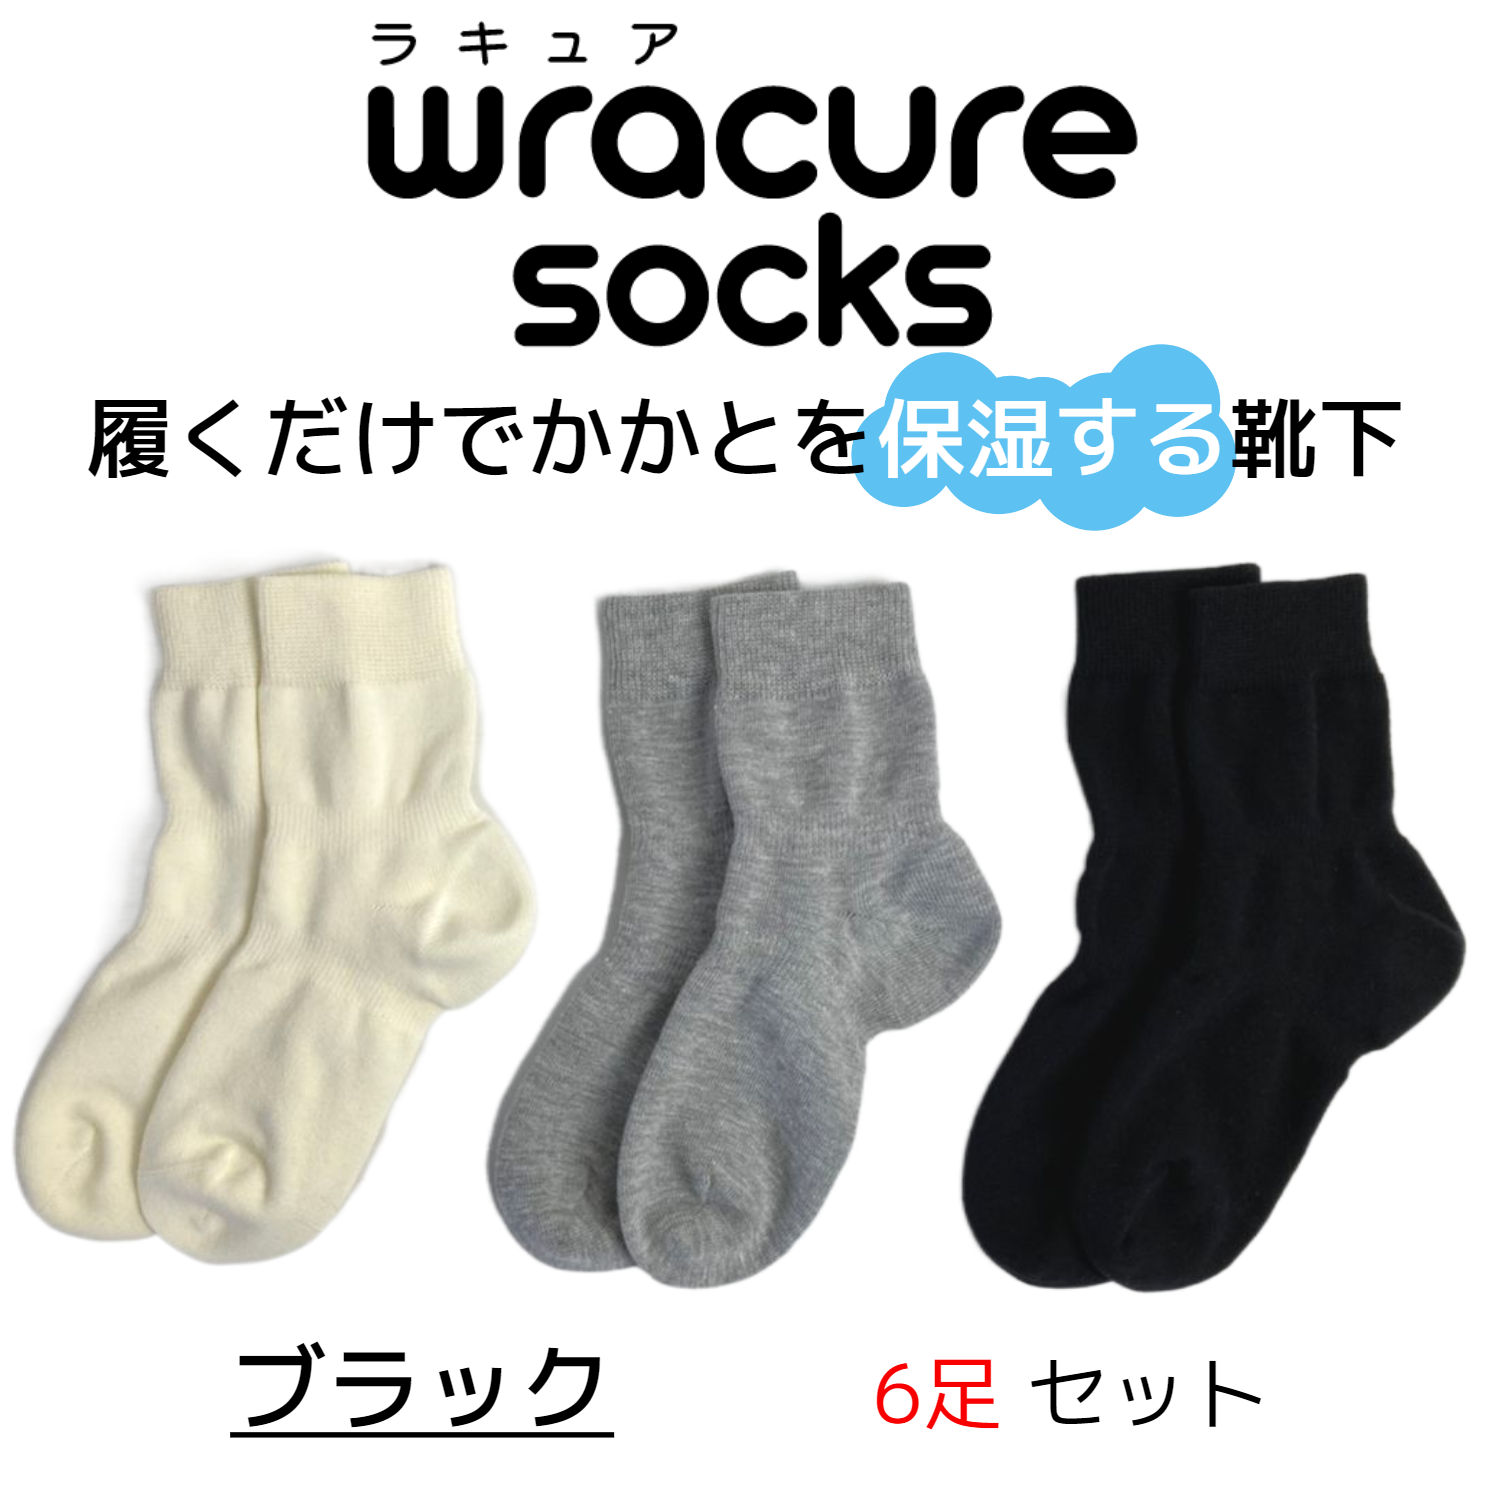 wracure socks ラキュアソックス【ブラック】履くだけでかかと保湿出来る靴下